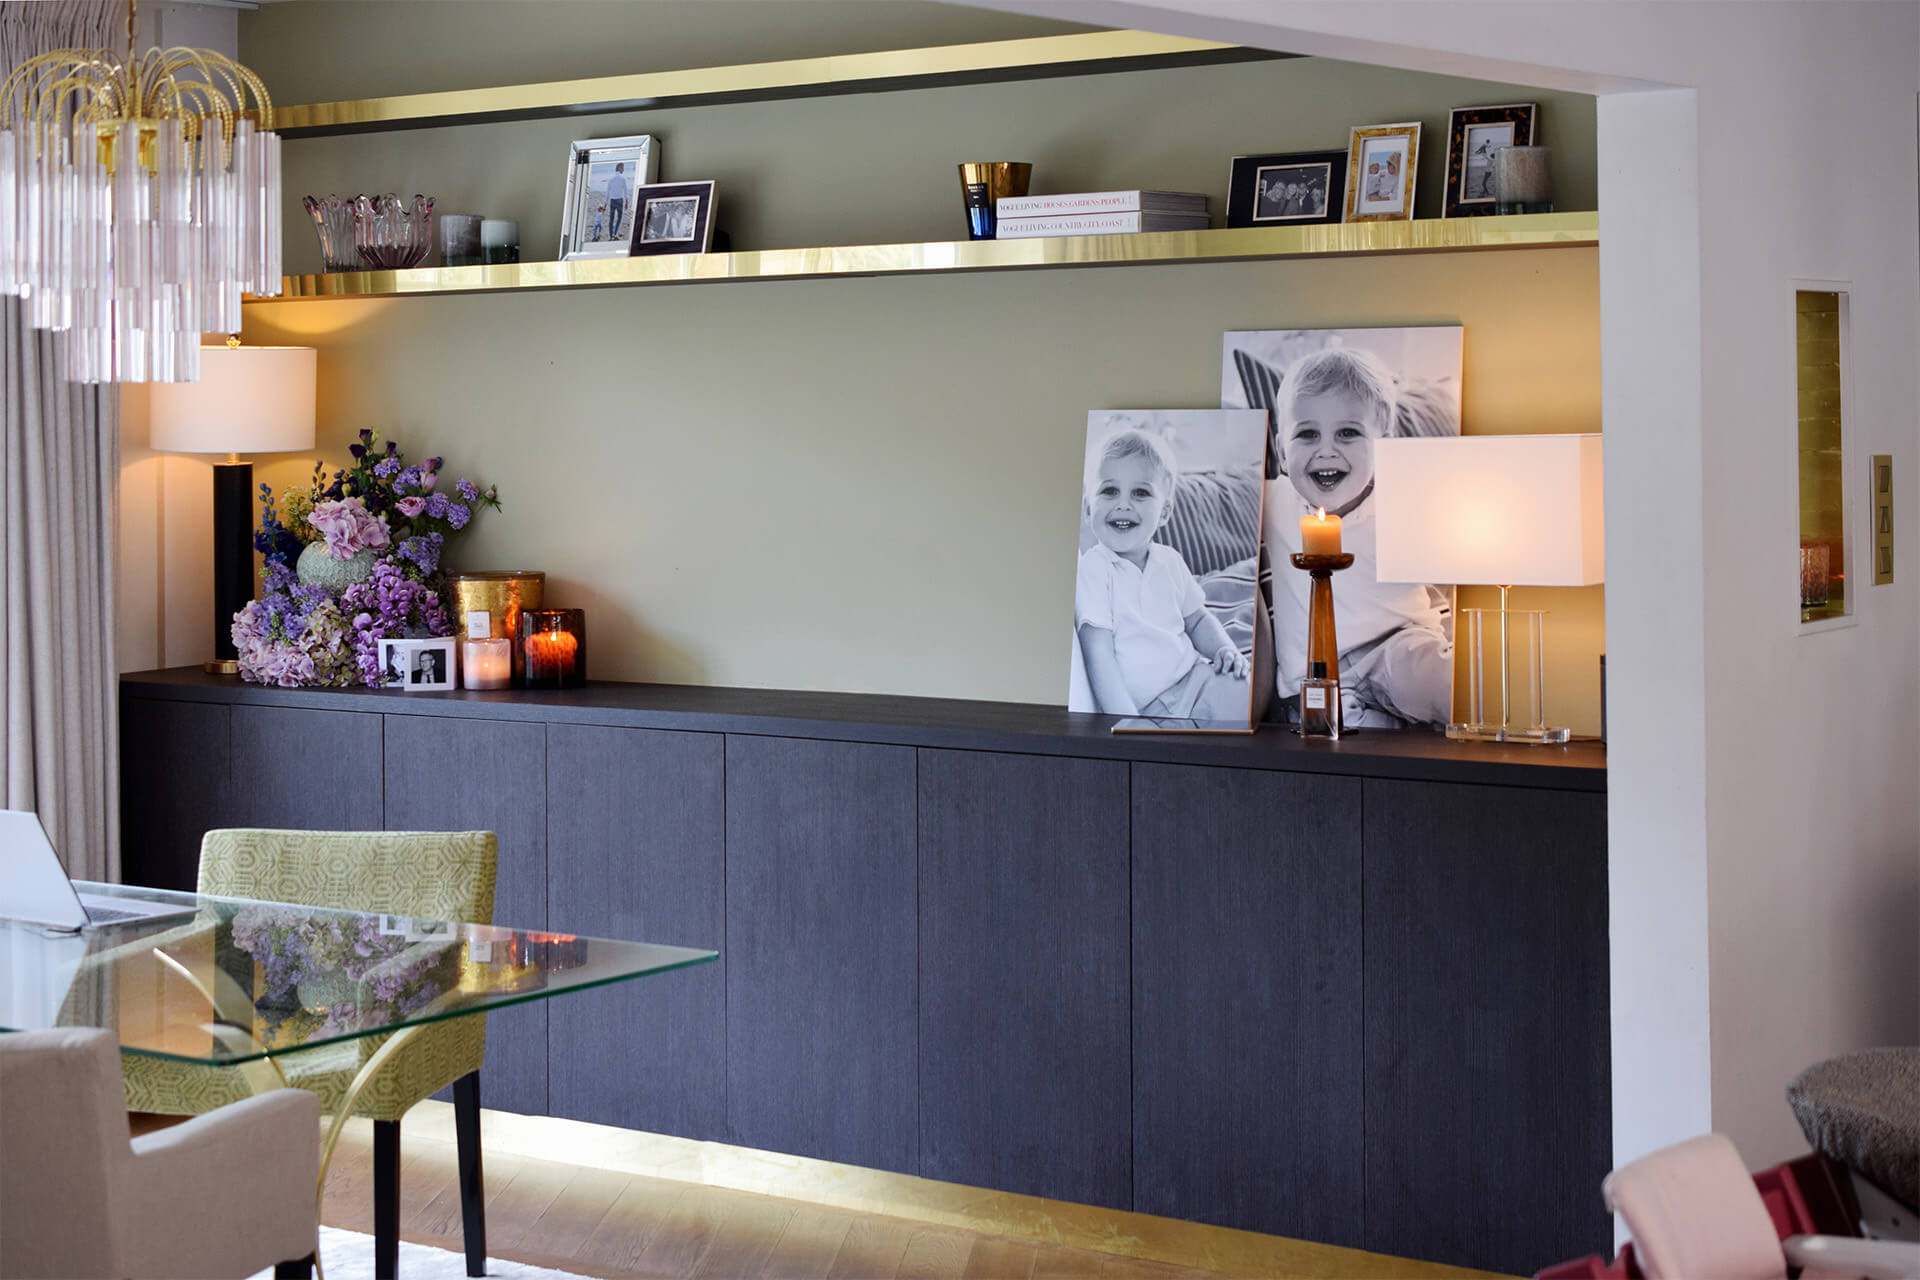 Integrated cabinet in livingroom by maatkastenonline